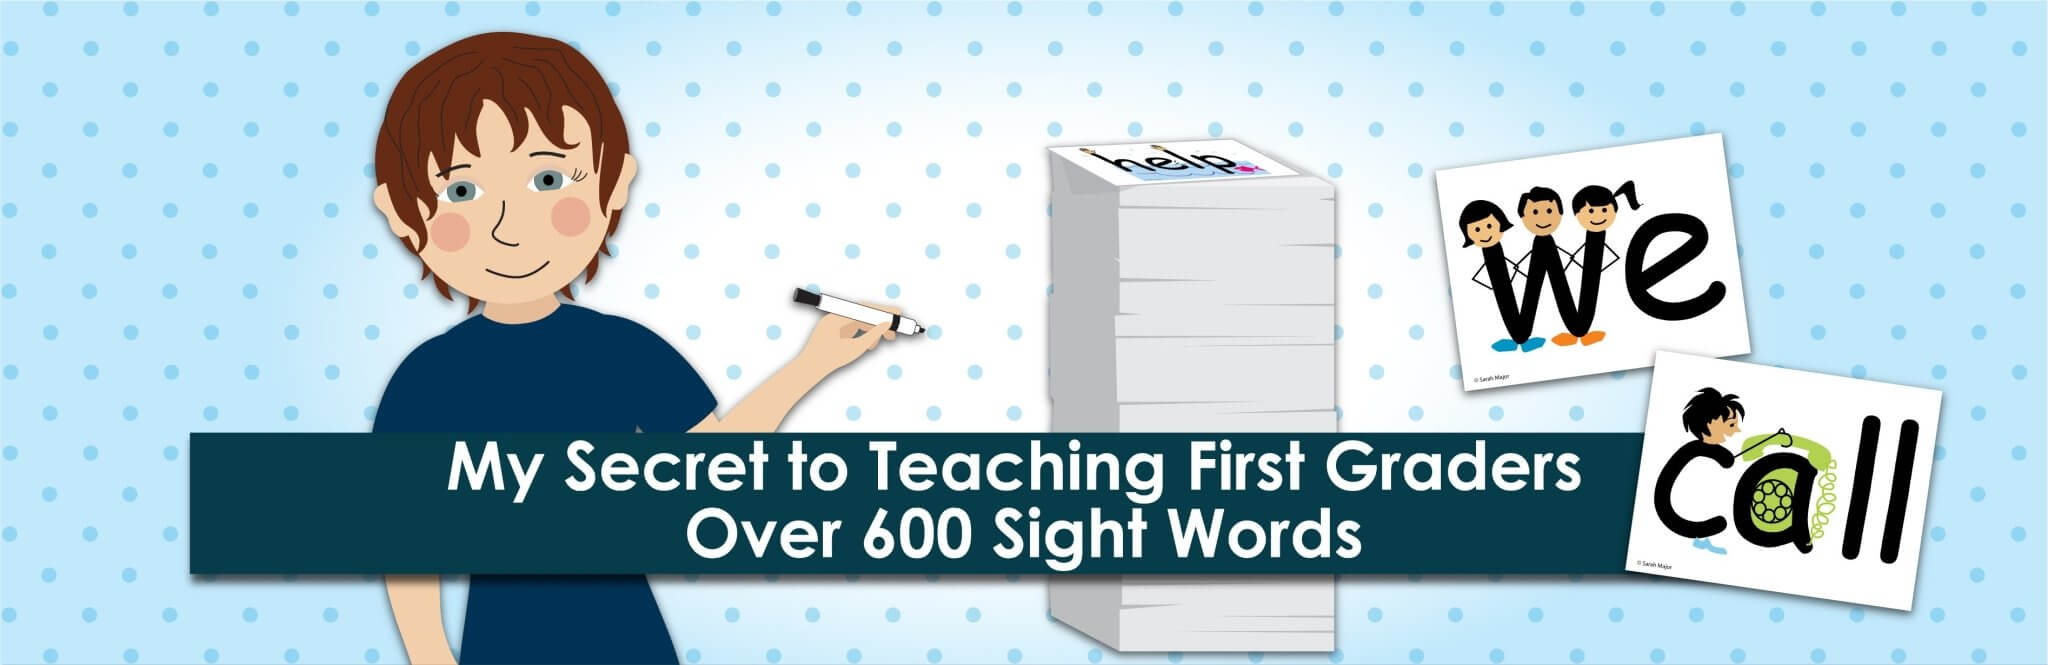 Mi secreto para enseñar a los niños de primer grado más de 600 palabras de uso frecuente